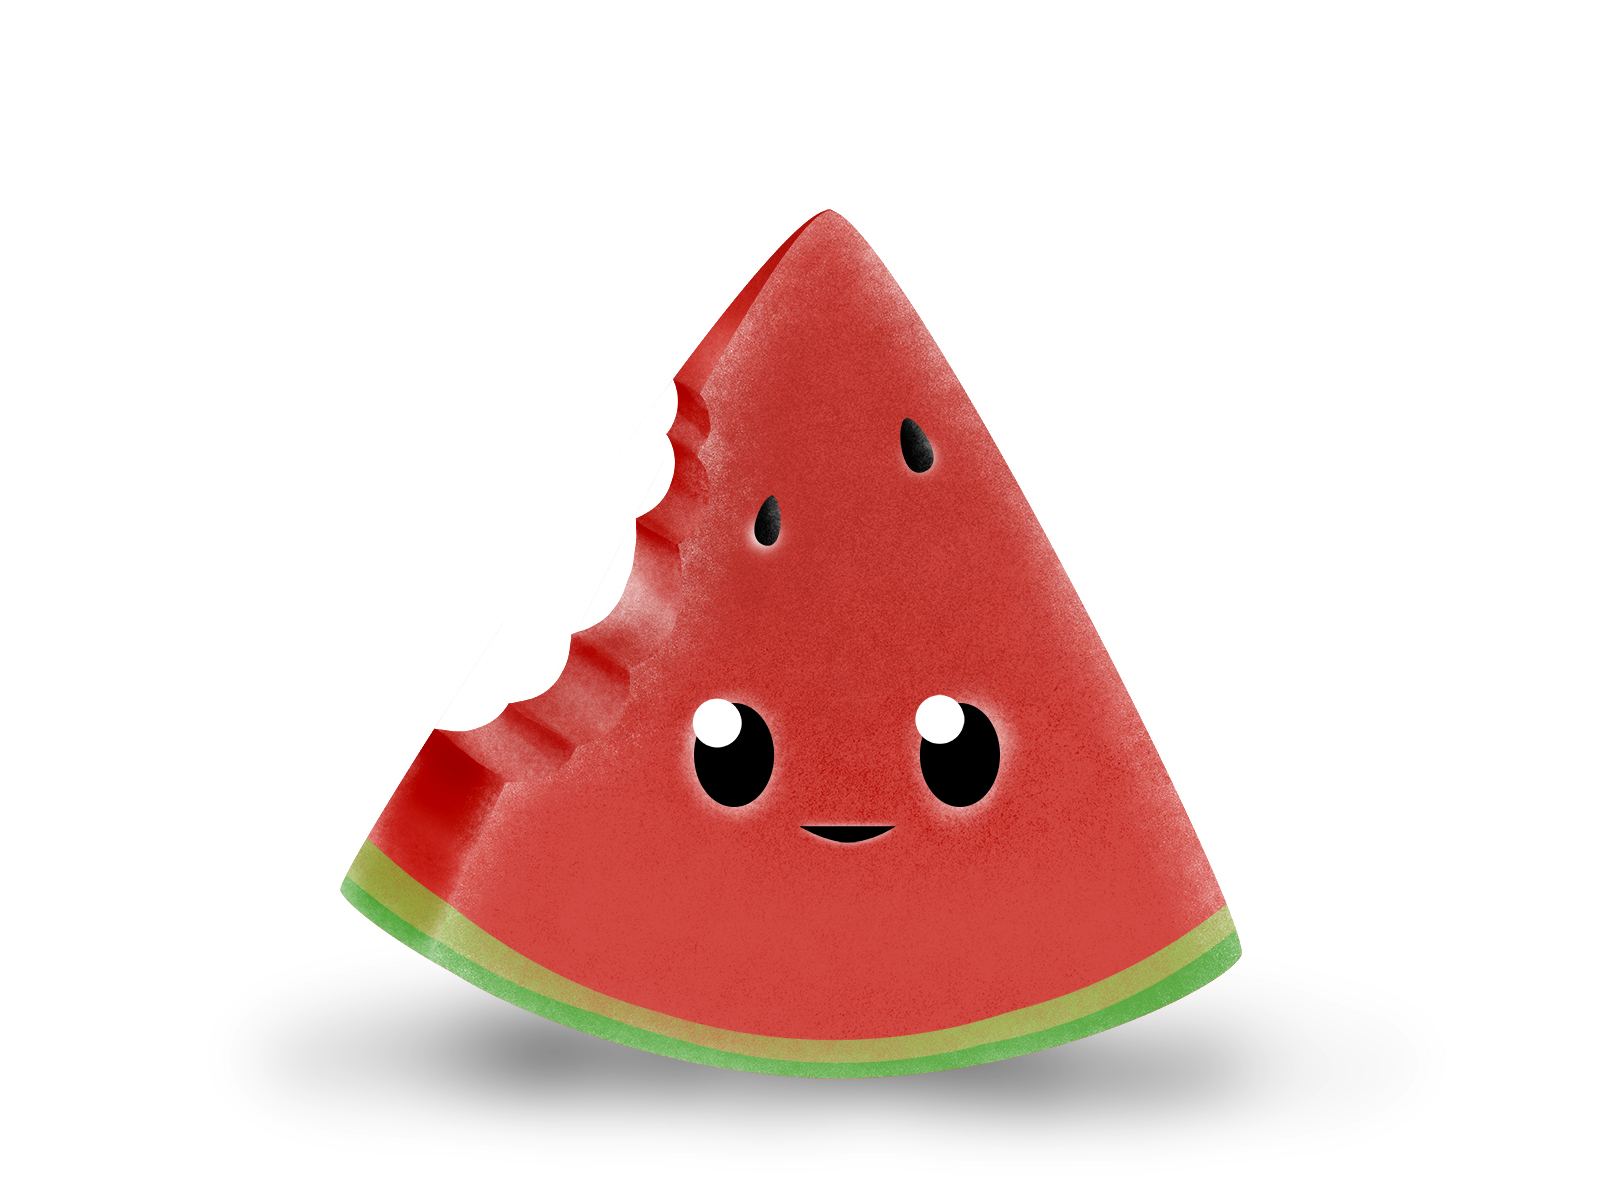 Cute cartoon watermelon by Artem Kotliar on Dribbble